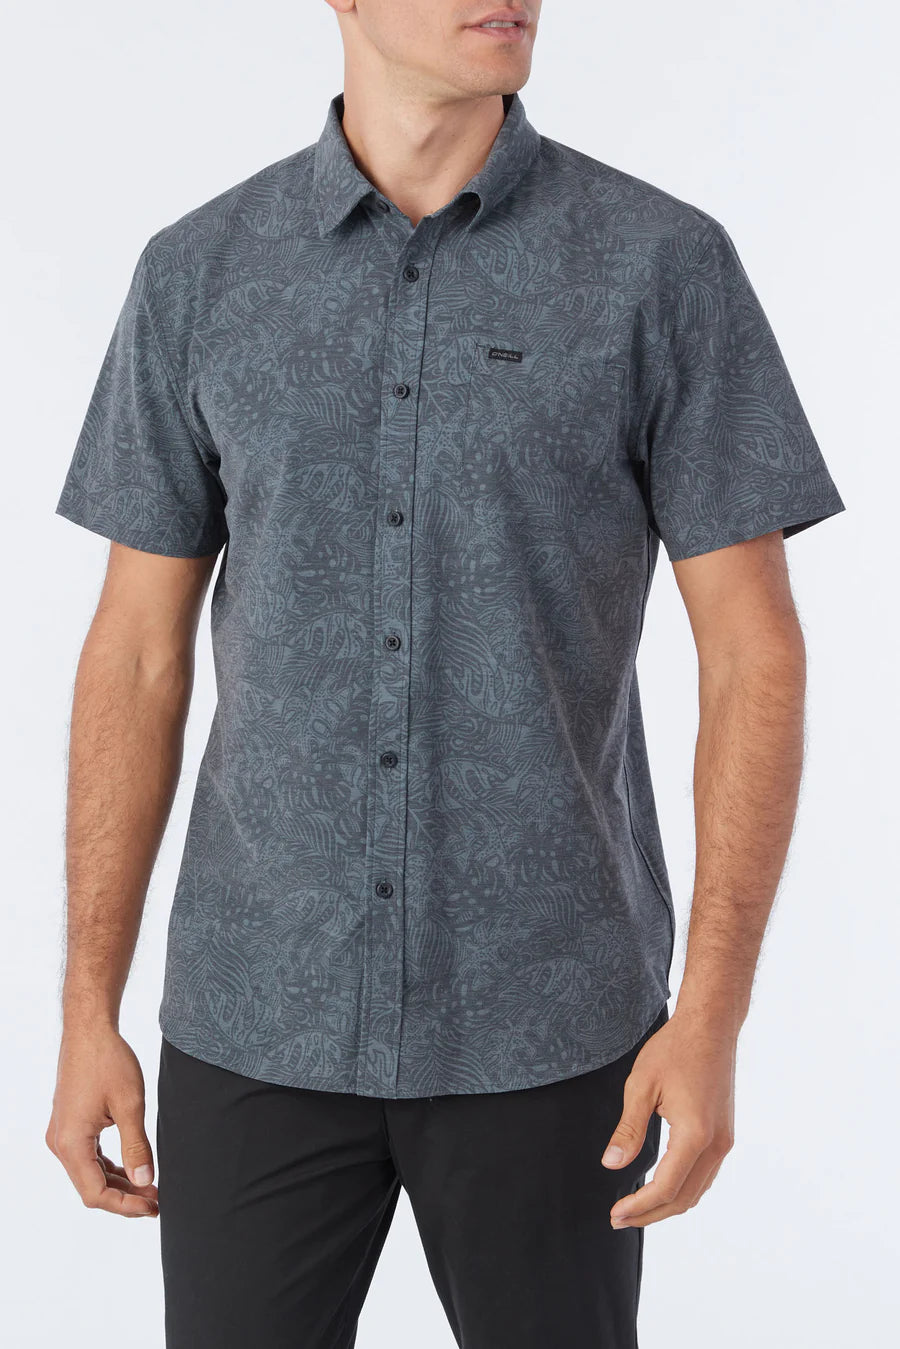 Traveler UPF Traverse Standard Short Sleeve Button-Down Shirt - Black